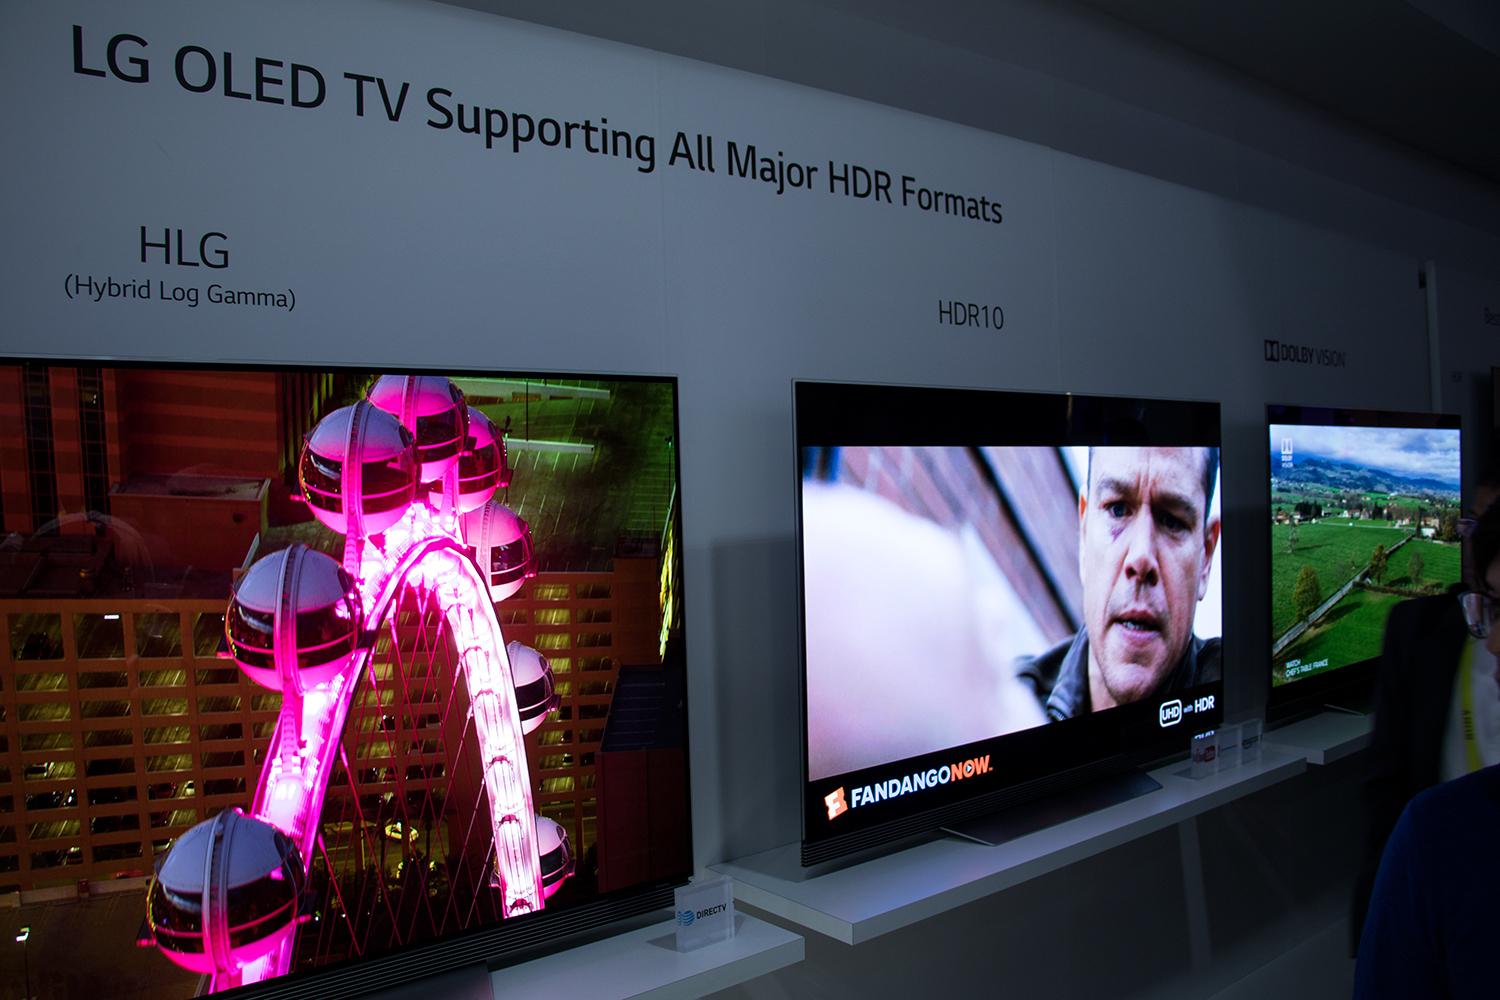 Det er flere HDR-formater i bransjen, og det er greit med en TV som støtter samtlige.